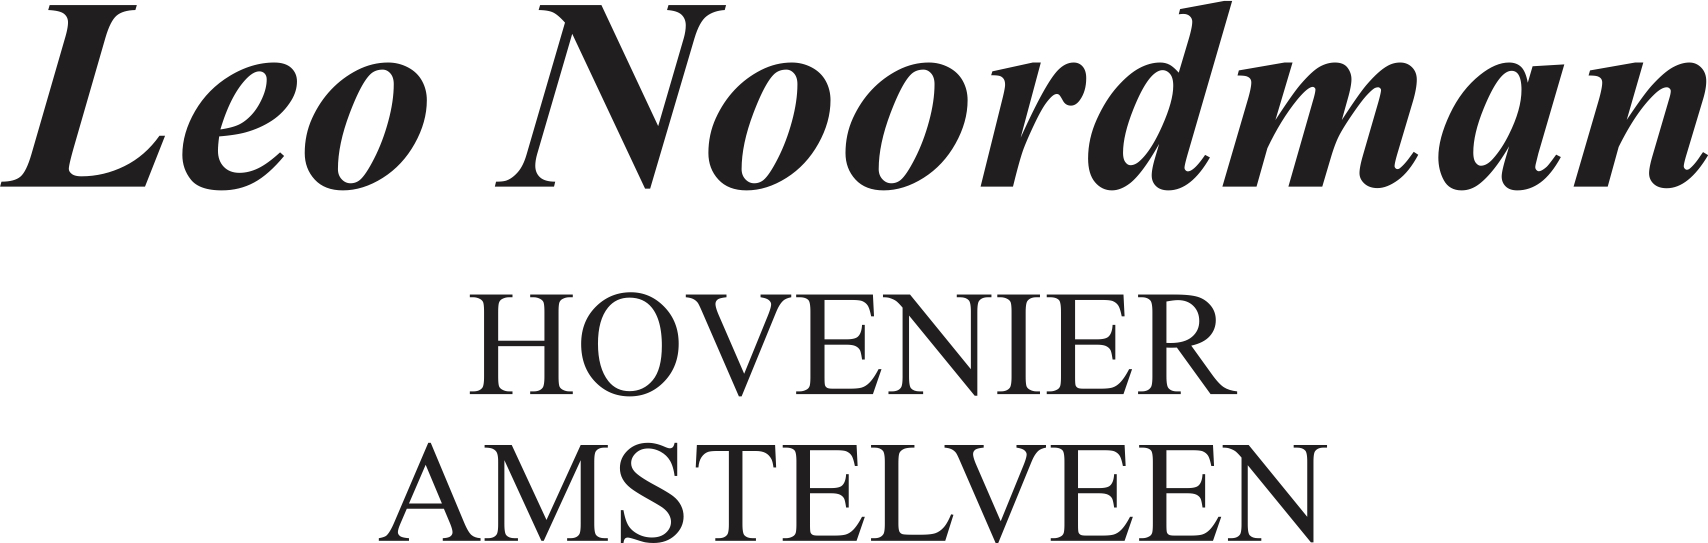 Leo Noordman logo